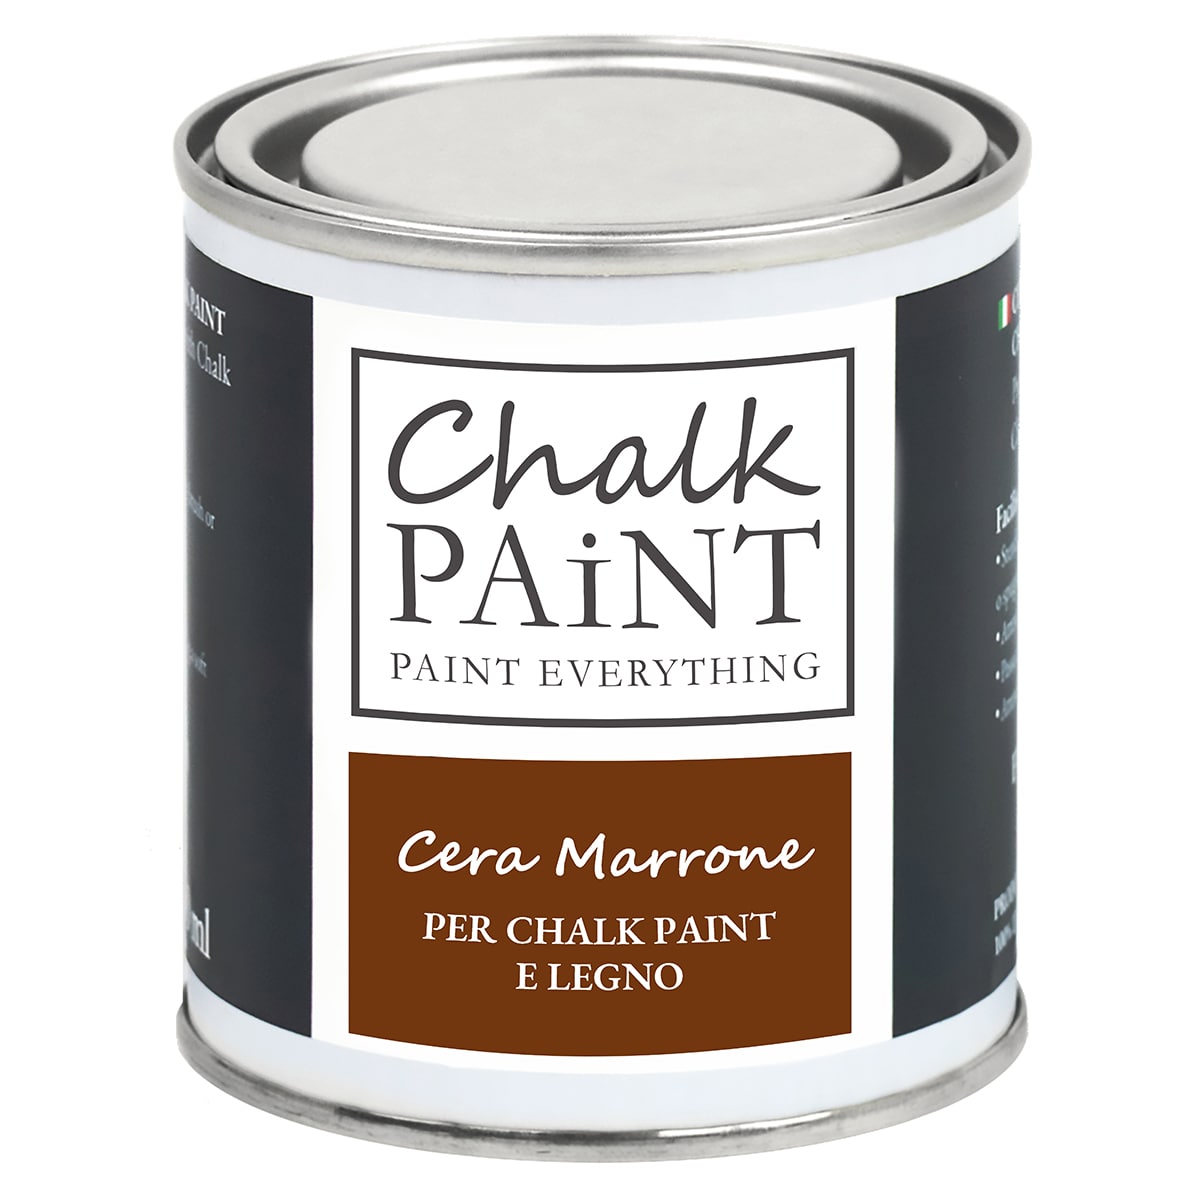 Cera Marrone per chalk paint e legno